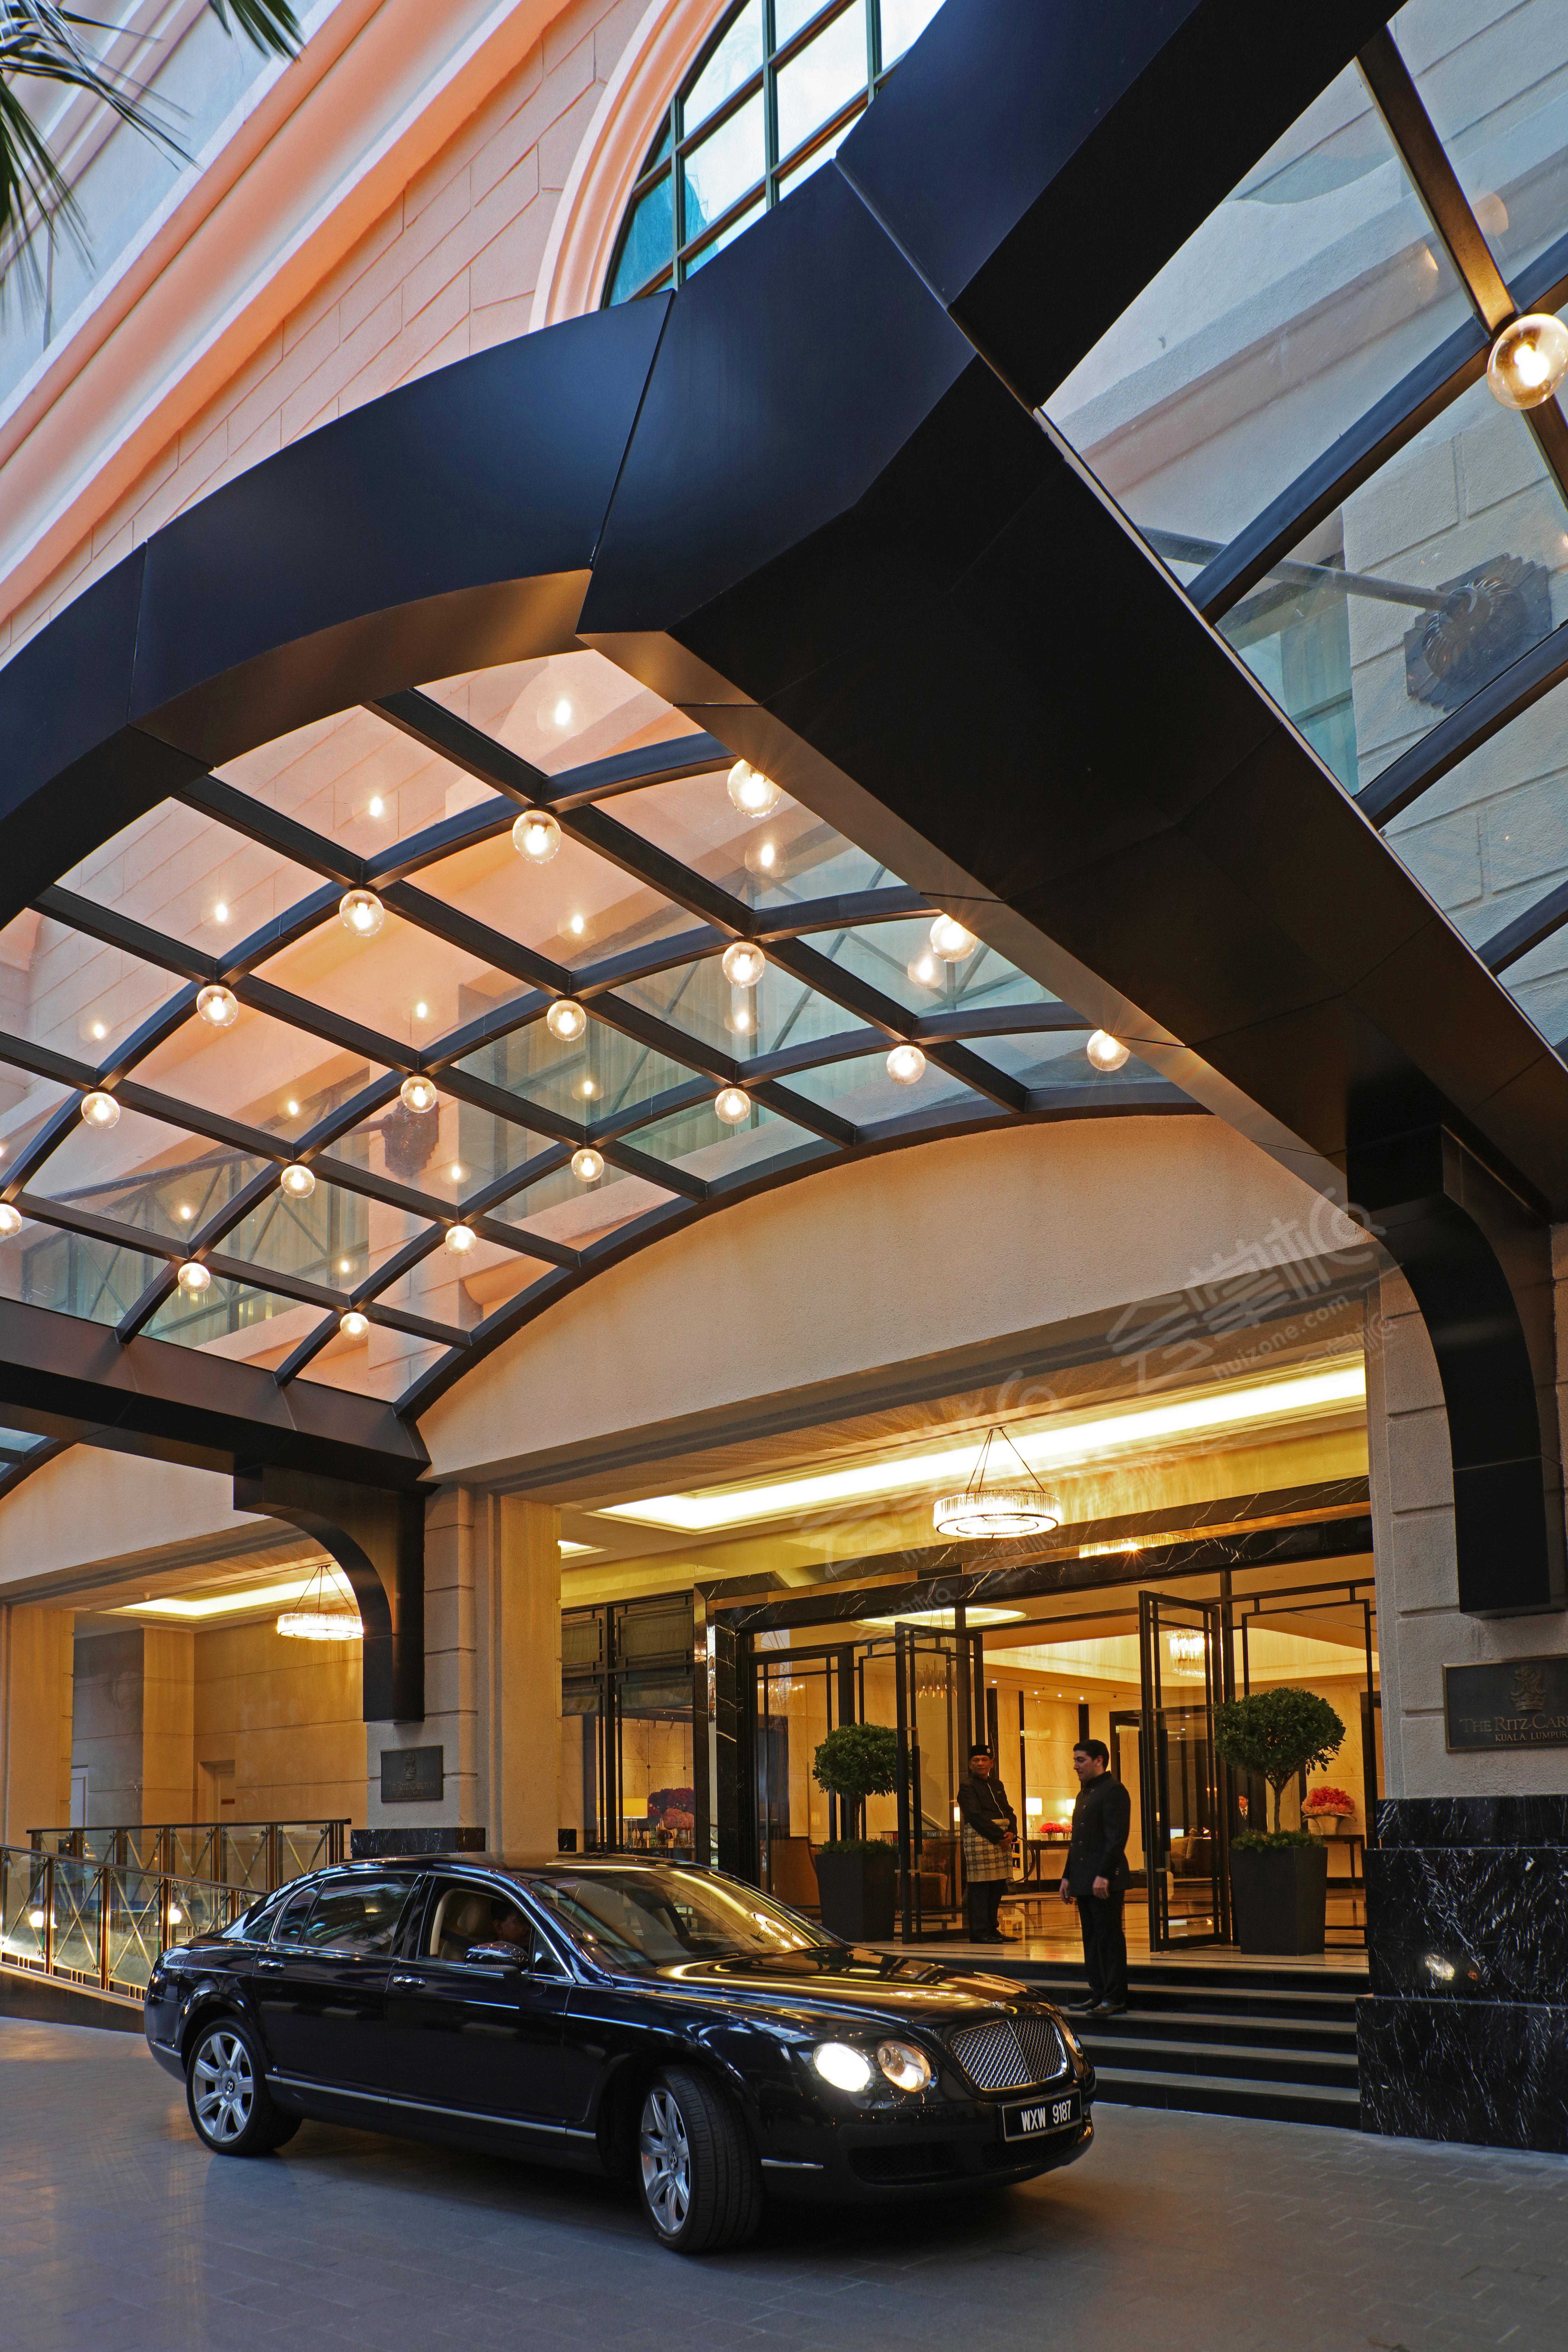 吉隆坡五星级酒店最大容纳400人的会议场地|吉隆坡丽思卡尔顿酒店(The Ritz-Carlton, Kuala Lumpur)的价格与联系方式